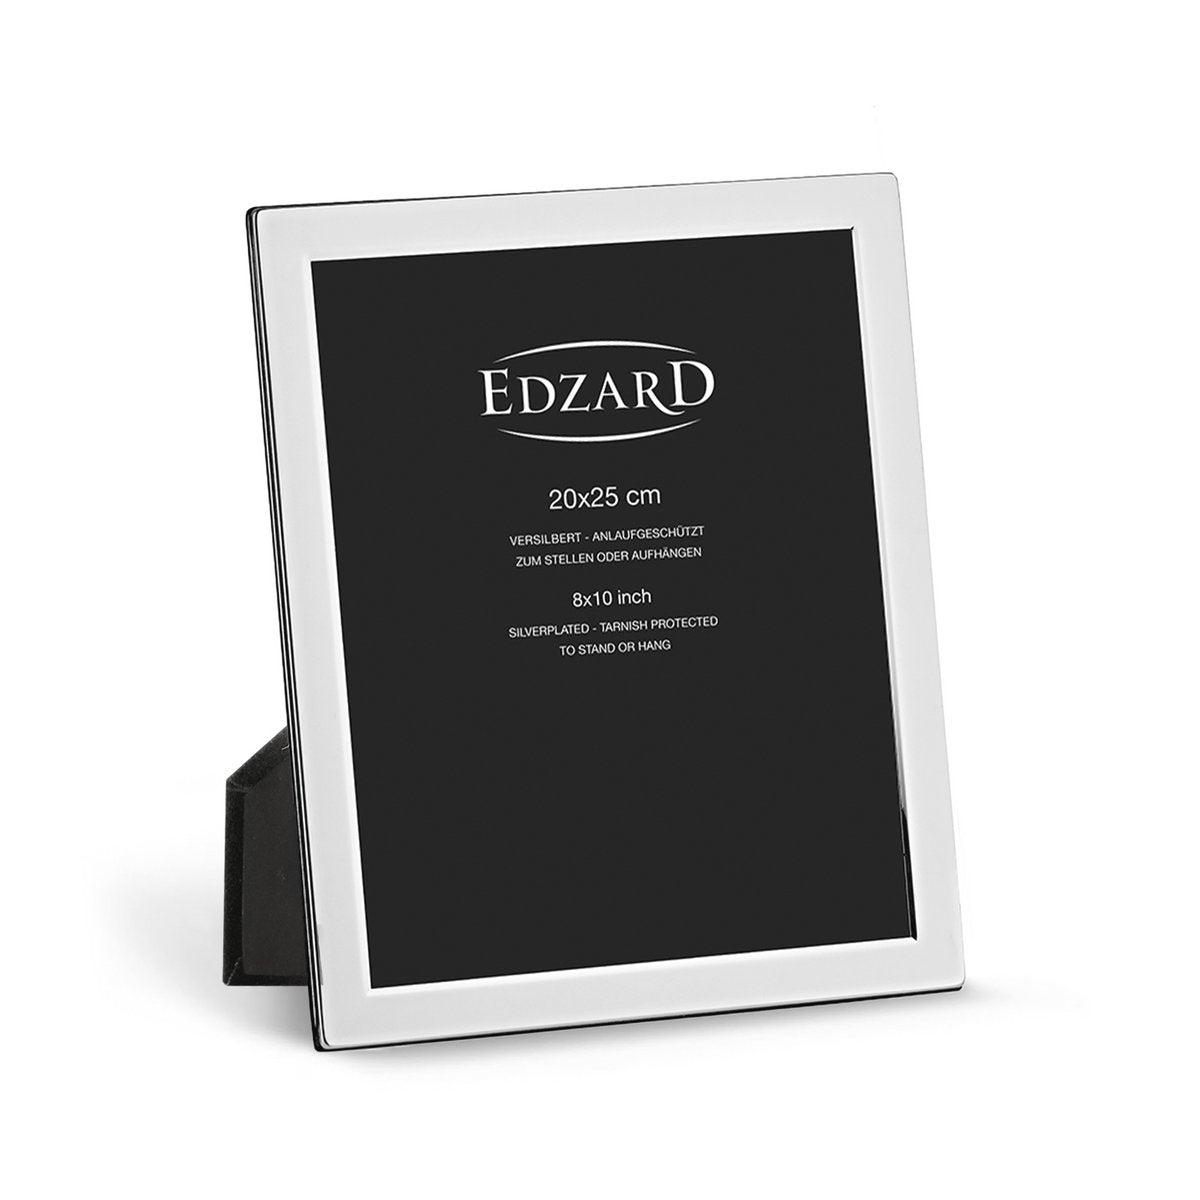 EDZARD Fotorahmen Salerno für Foto 20 x 25 cm, edel versilbert, anlaufgeschützt, mit 2 Aufhängern - HomeDesign Knaus